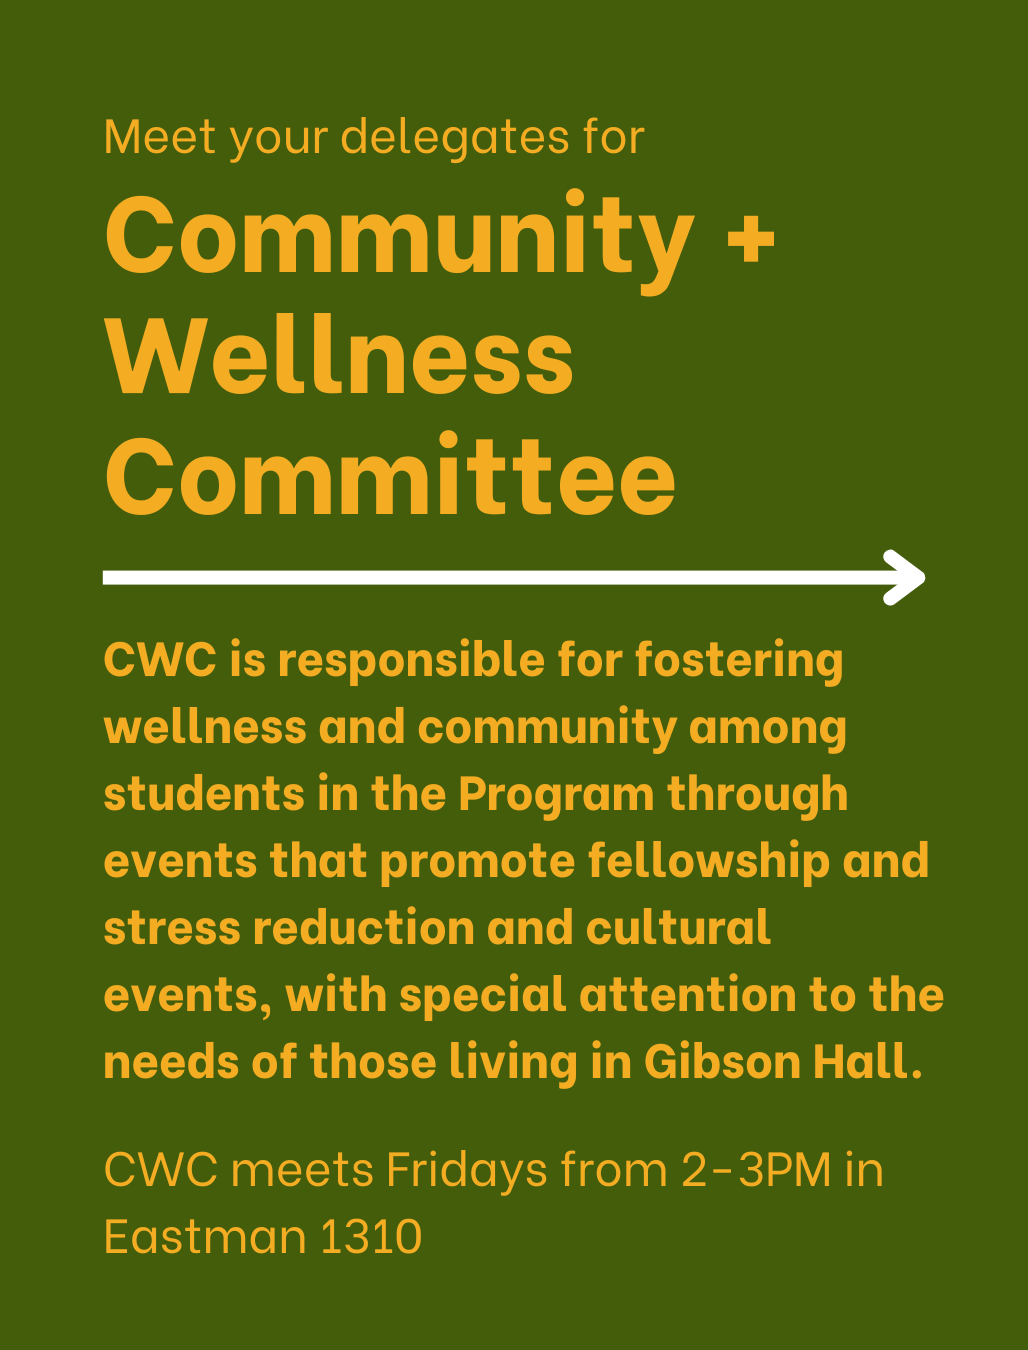 Community + Wellness Committee